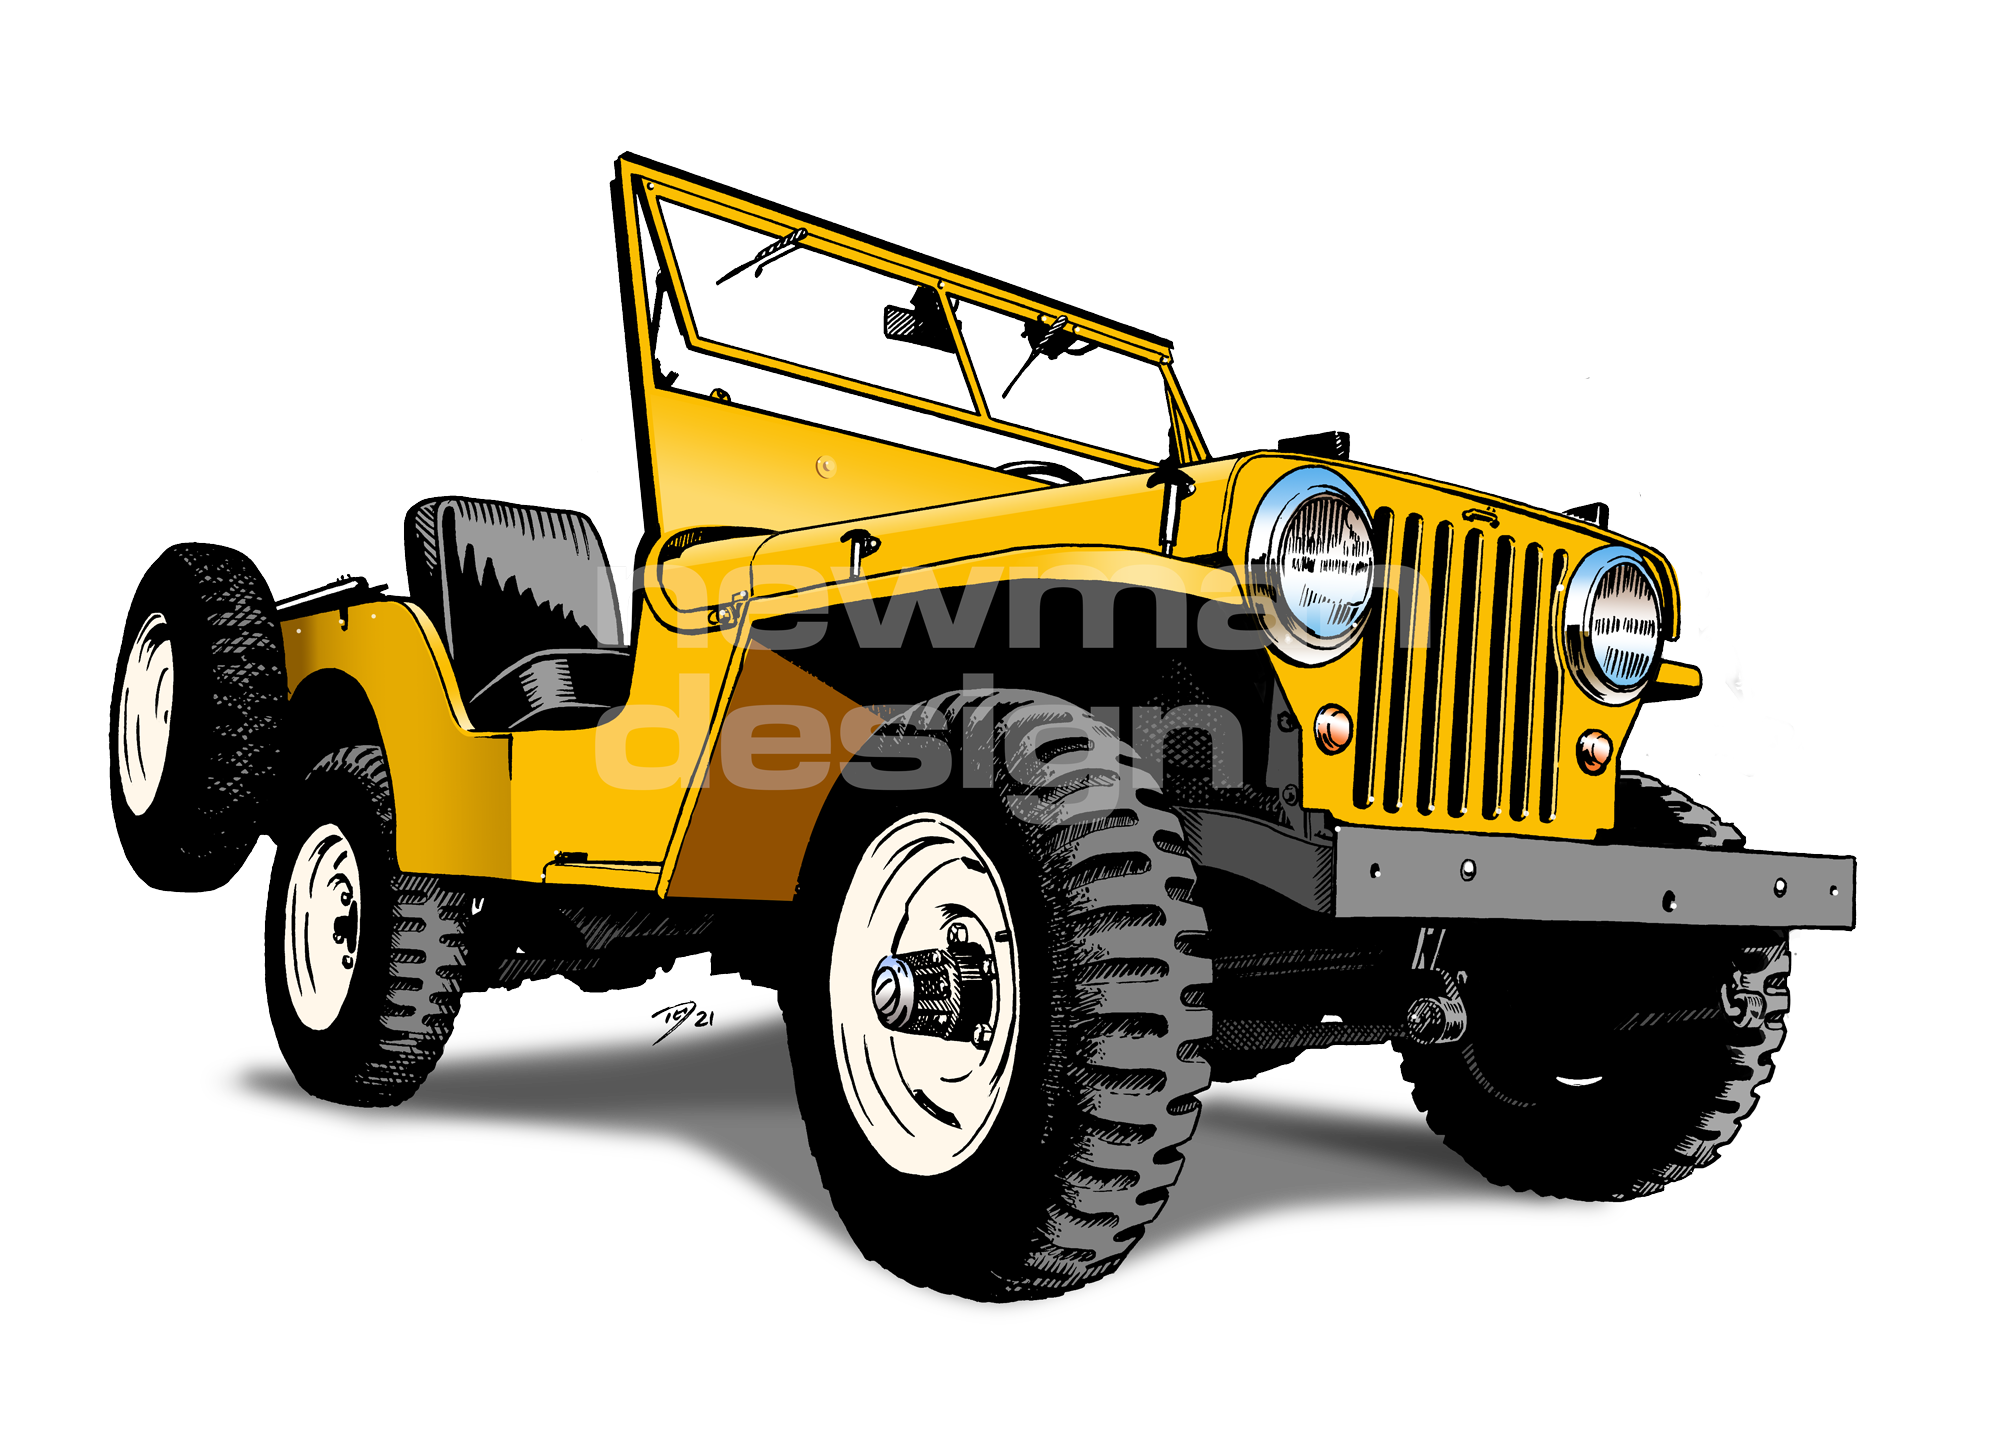 Willys Jeep cj2a yellow